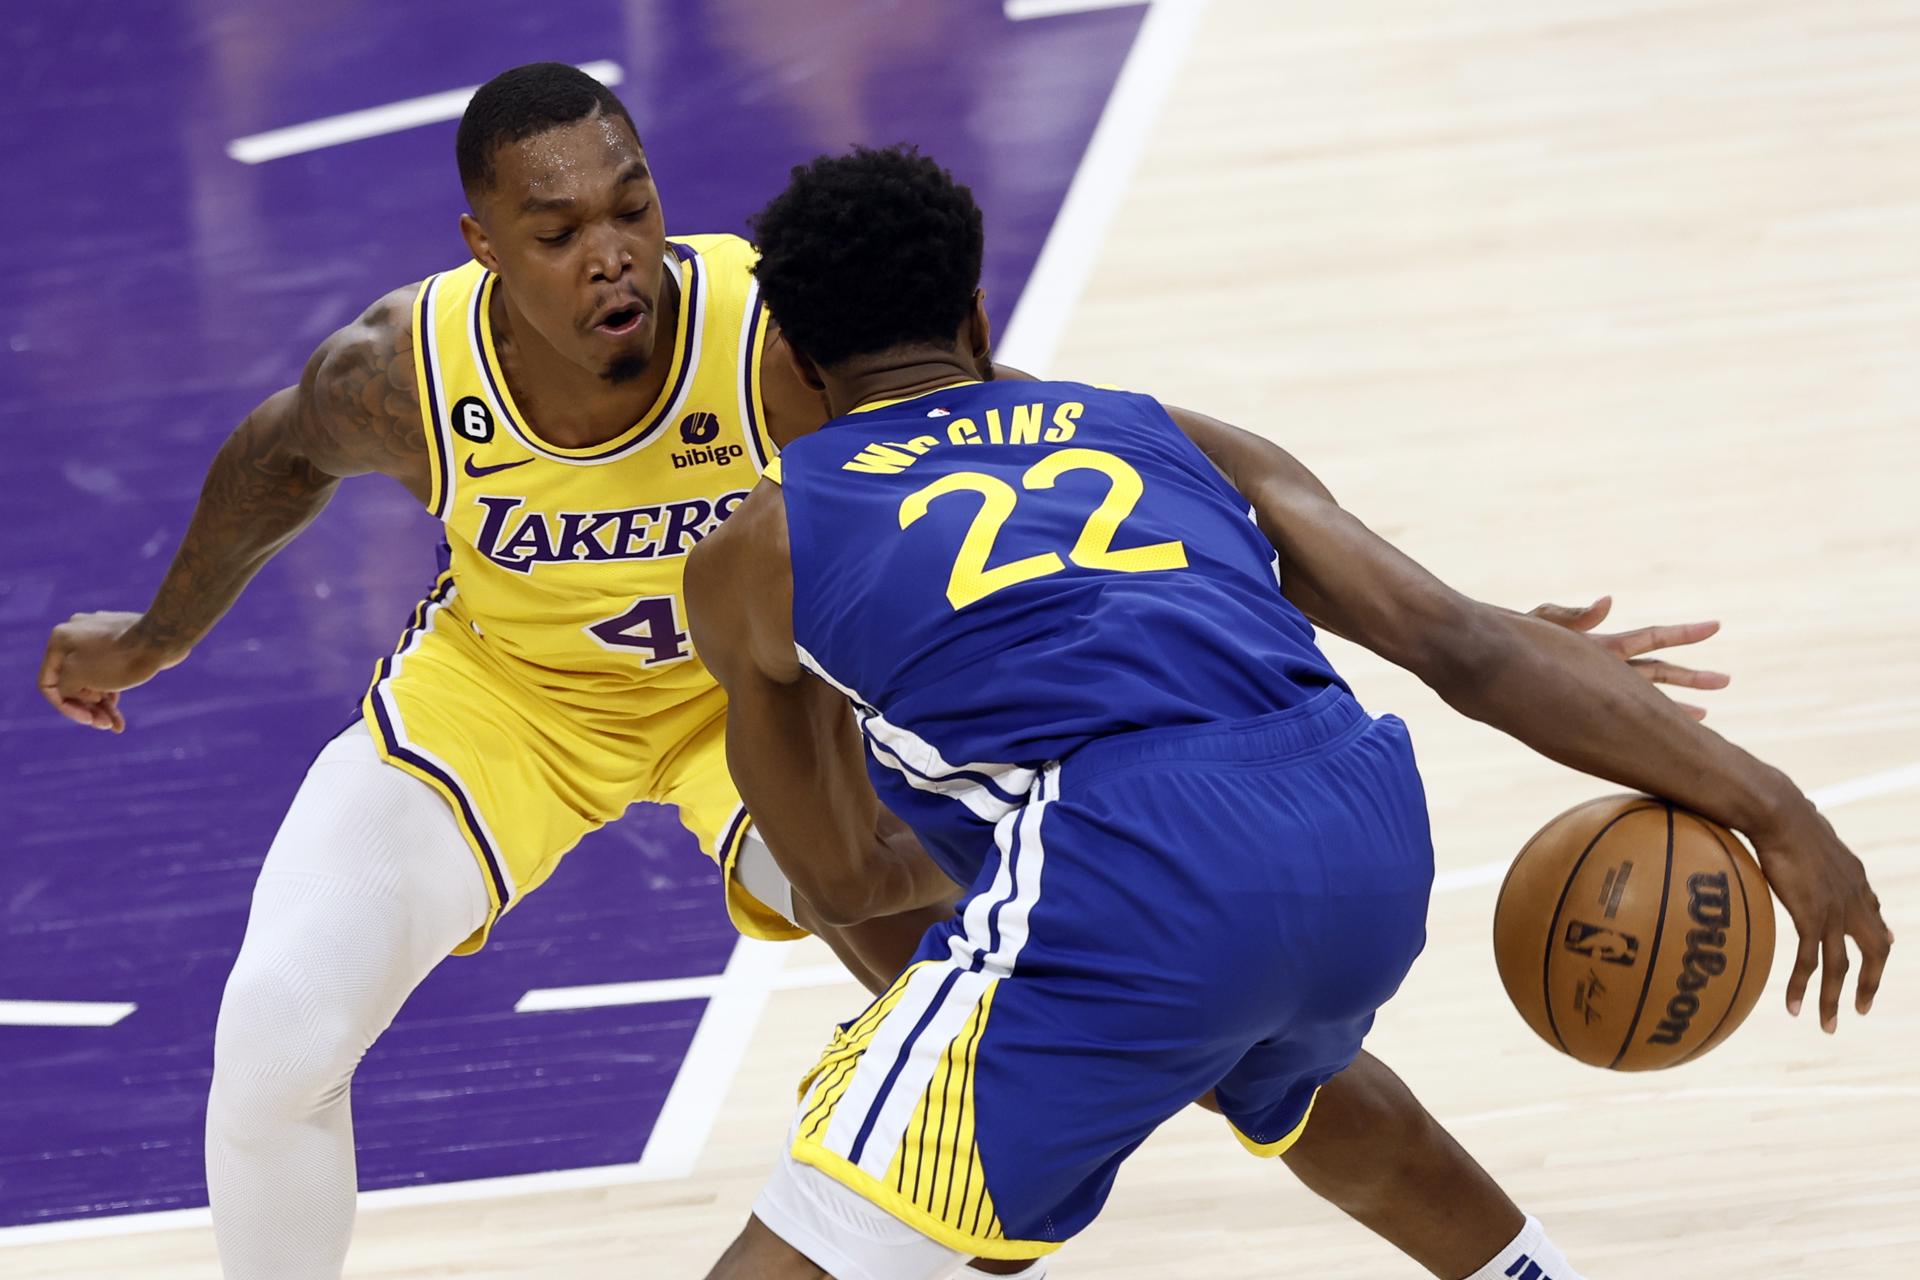 Lonnie Walker, la revelación de Lakers: "Es la sensación más grande que puedas imaginar"